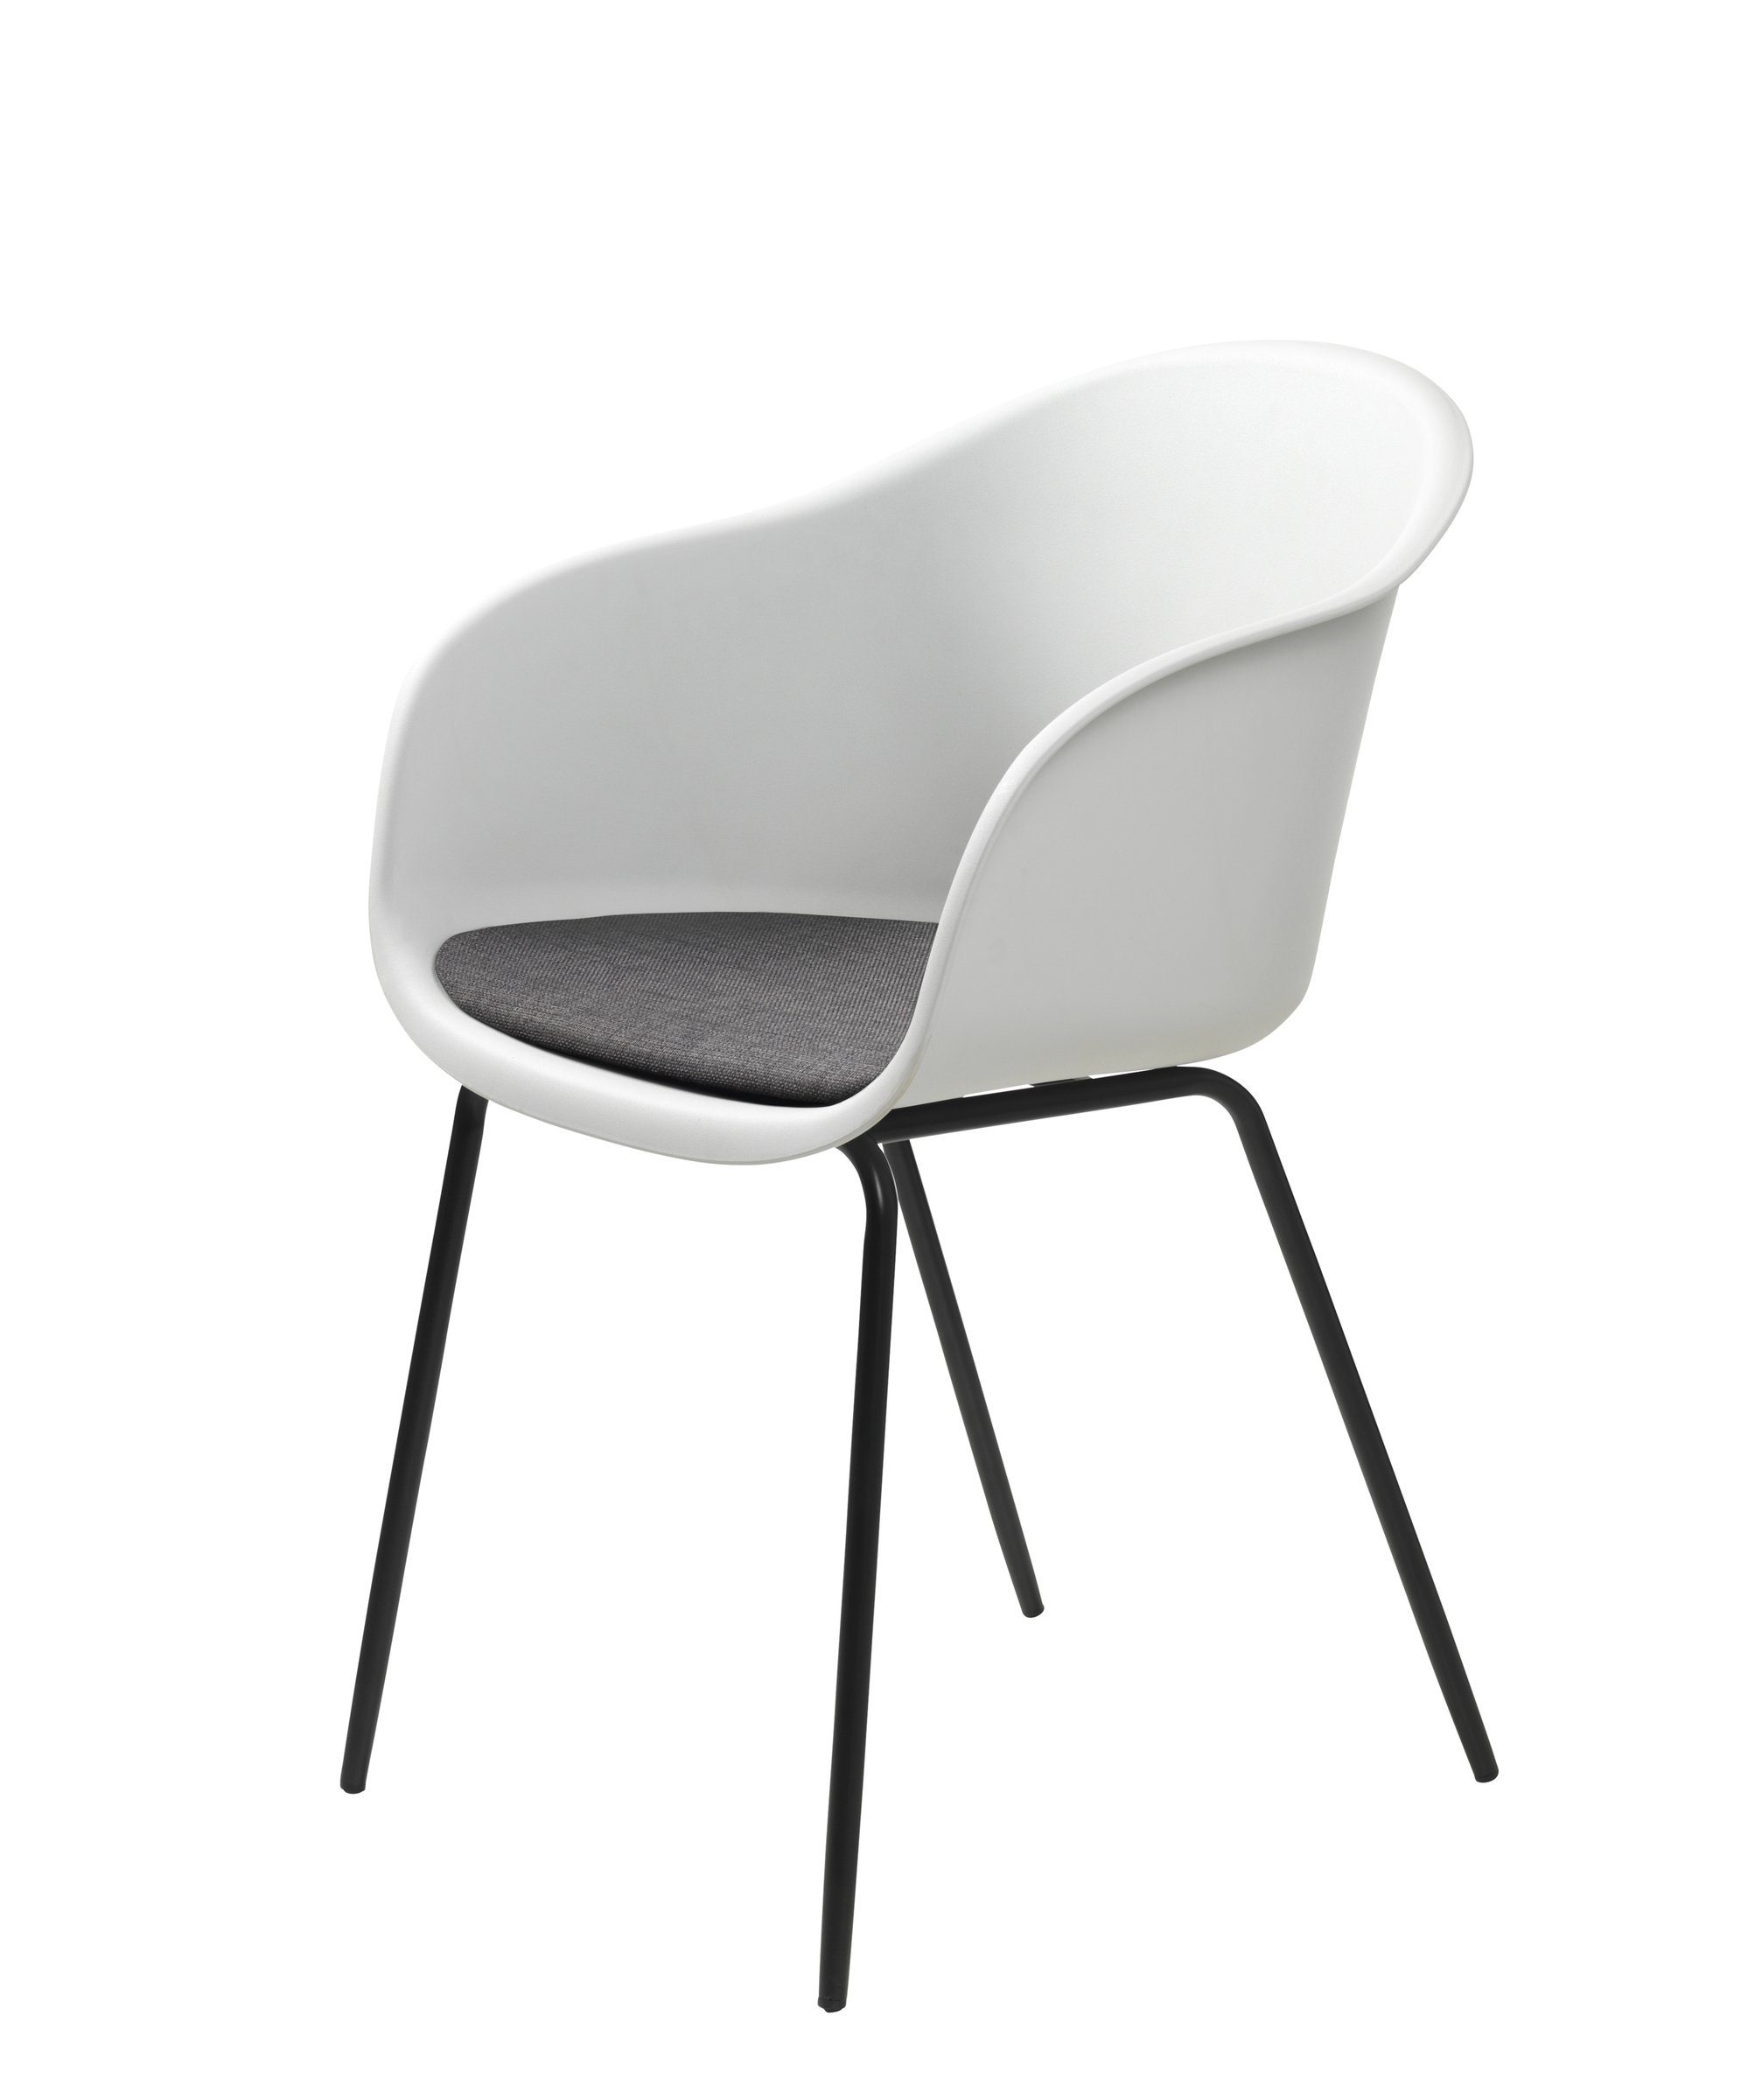 möbelando Stuhl TOPLEY (2er-Set), aus Metall/Kunststoff in Weiß mit Absetzungen in grau/schwarz